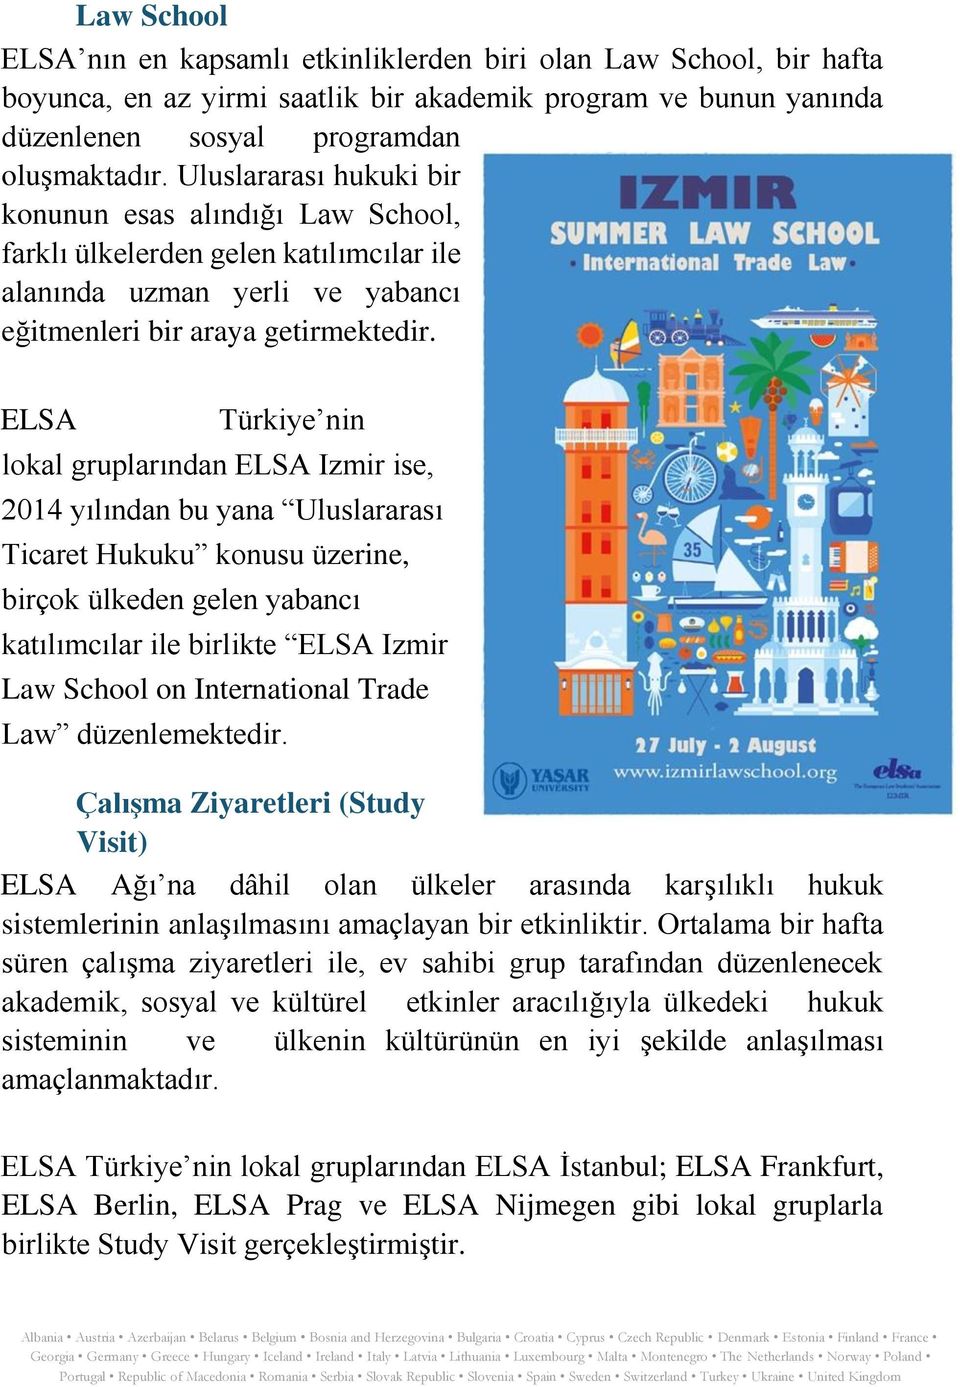 ELSA Türkiye nin lokal gruplarından ELSA Izmir ise, 2014 yılından bu yana Uluslararası Ticaret Hukuku konusu üzerine, birçok ülkeden gelen yabancı katılımcılar ile birlikte ELSA Izmir Law School on